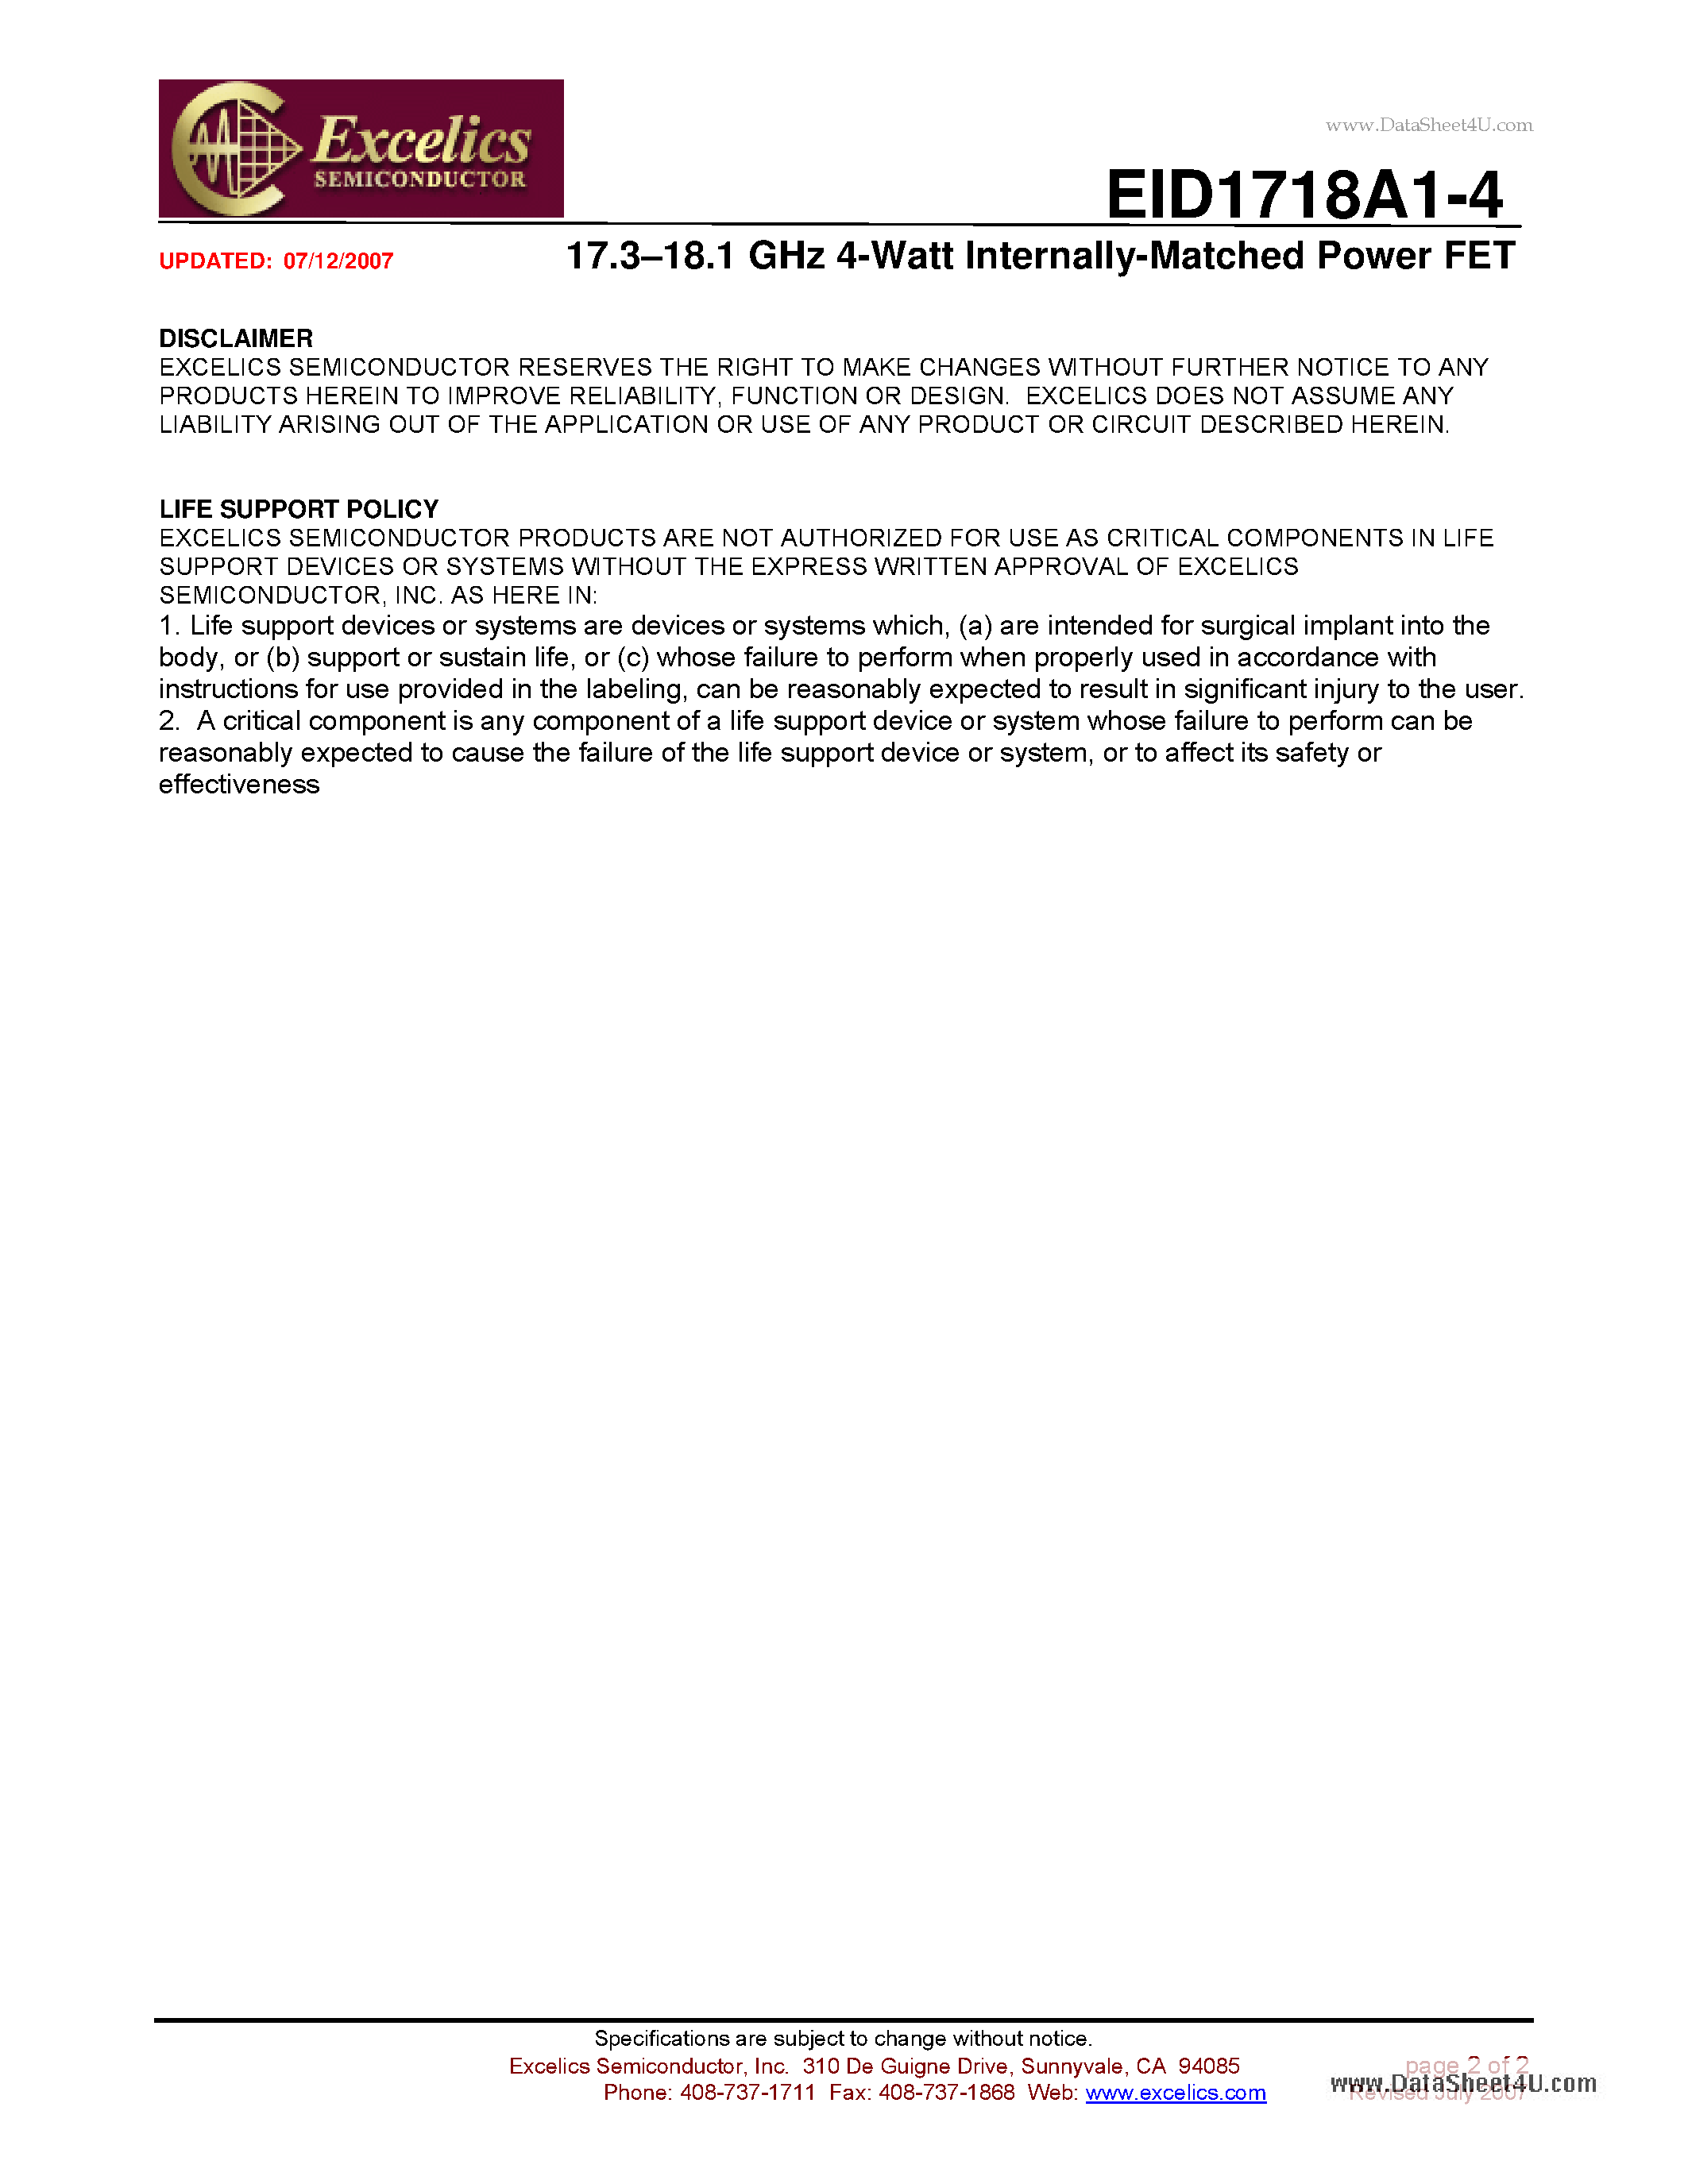 Datasheet EID1718A1-4 - 17.3-18.1 GHz 4-Watt Internally-Matched Power FET page 2